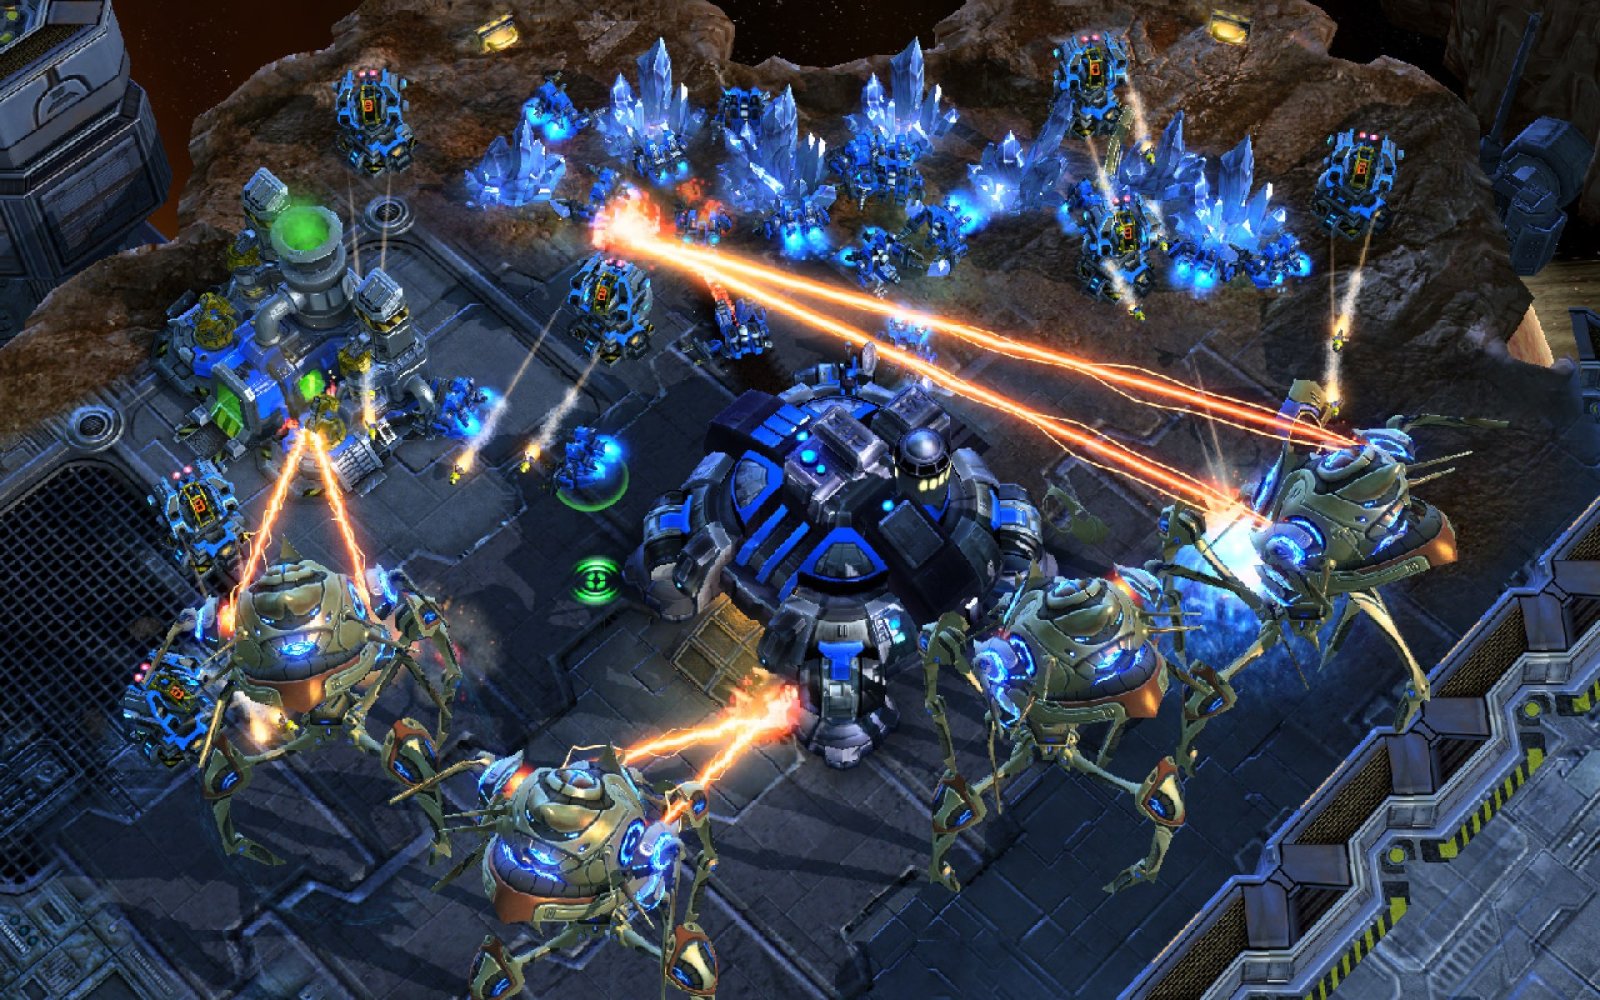 มีความเป็นไปได้ที่ StarCraft จะกลับมาอีกครั้ง แต่อาจจะไม่ได้เป็นแนว RTS